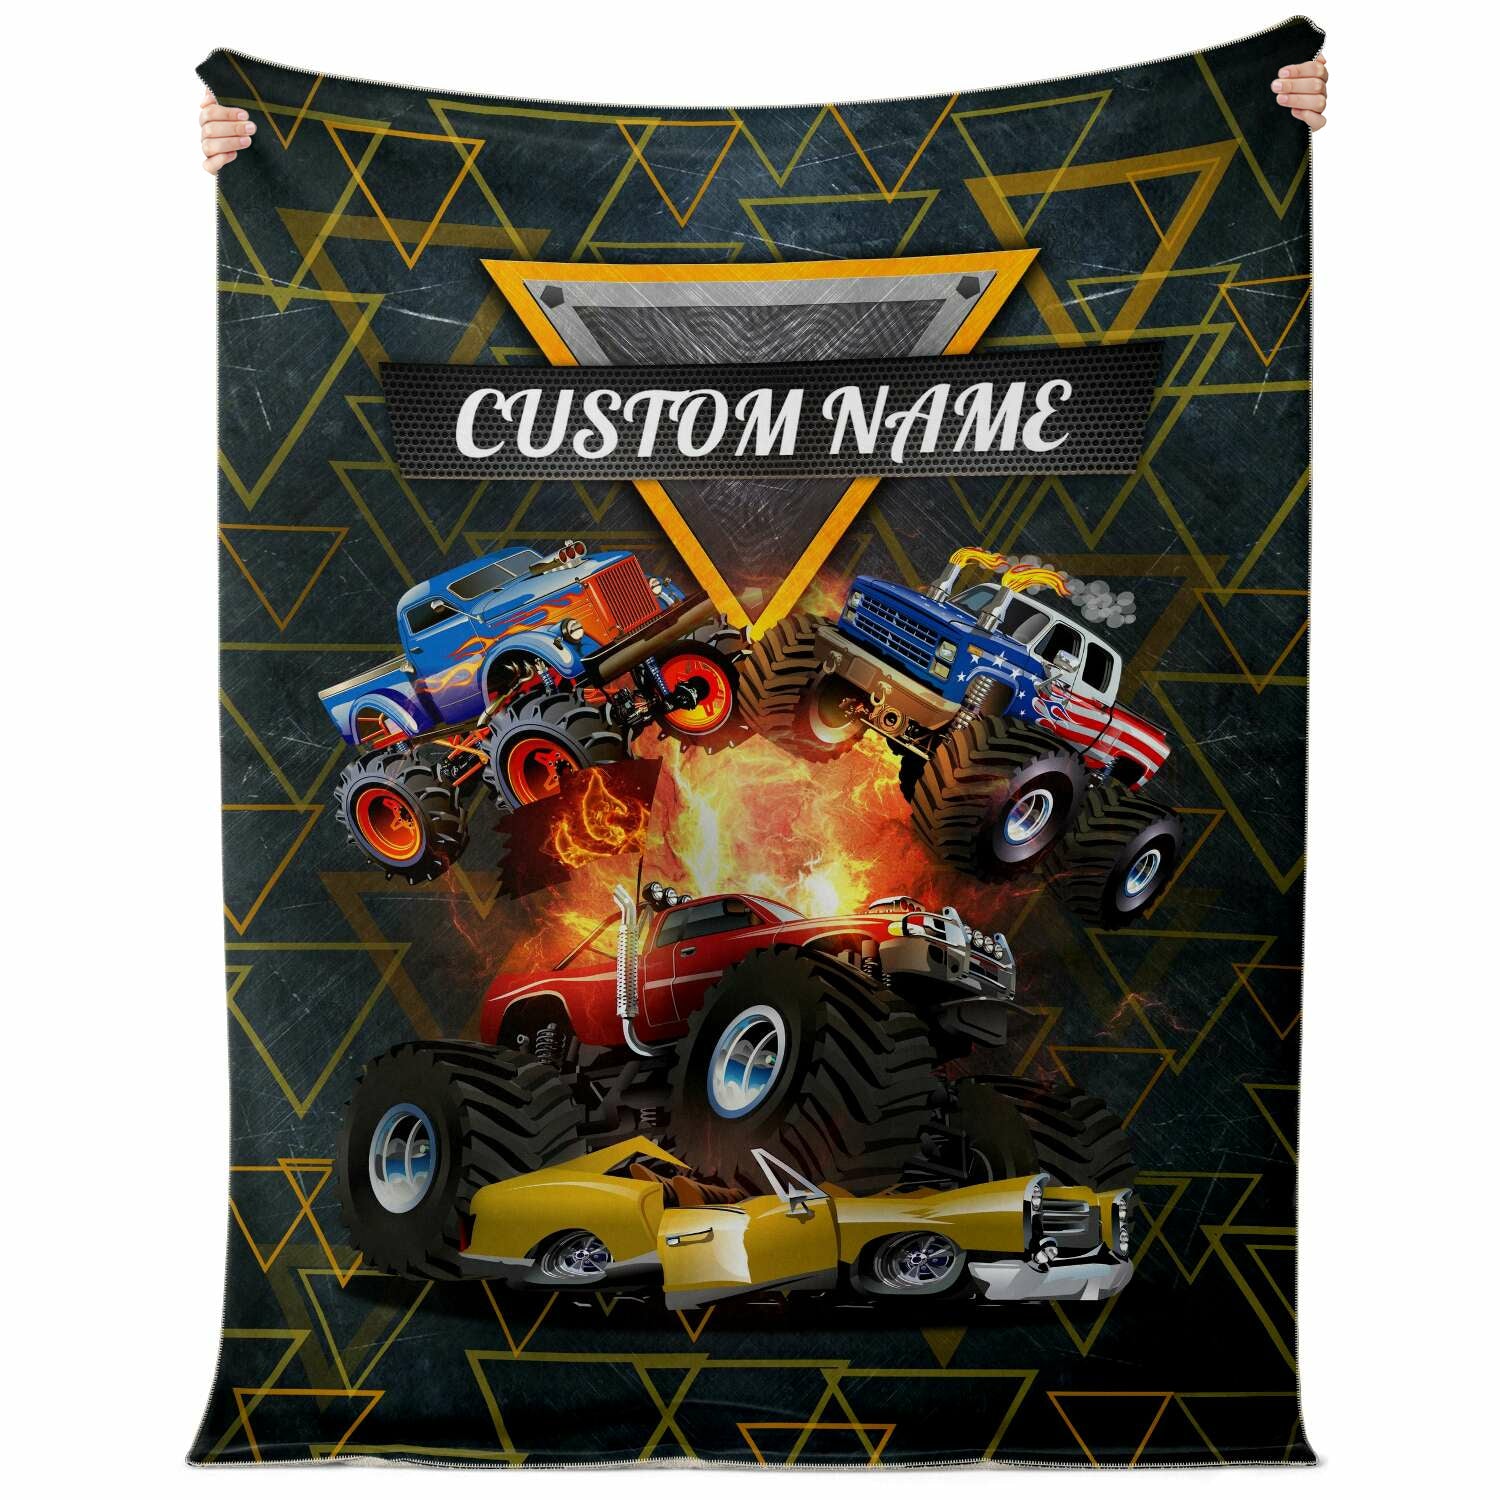 Personalized Name Monster Truck Blanket for Kids, Custom Name Blanket for Boys & Girls